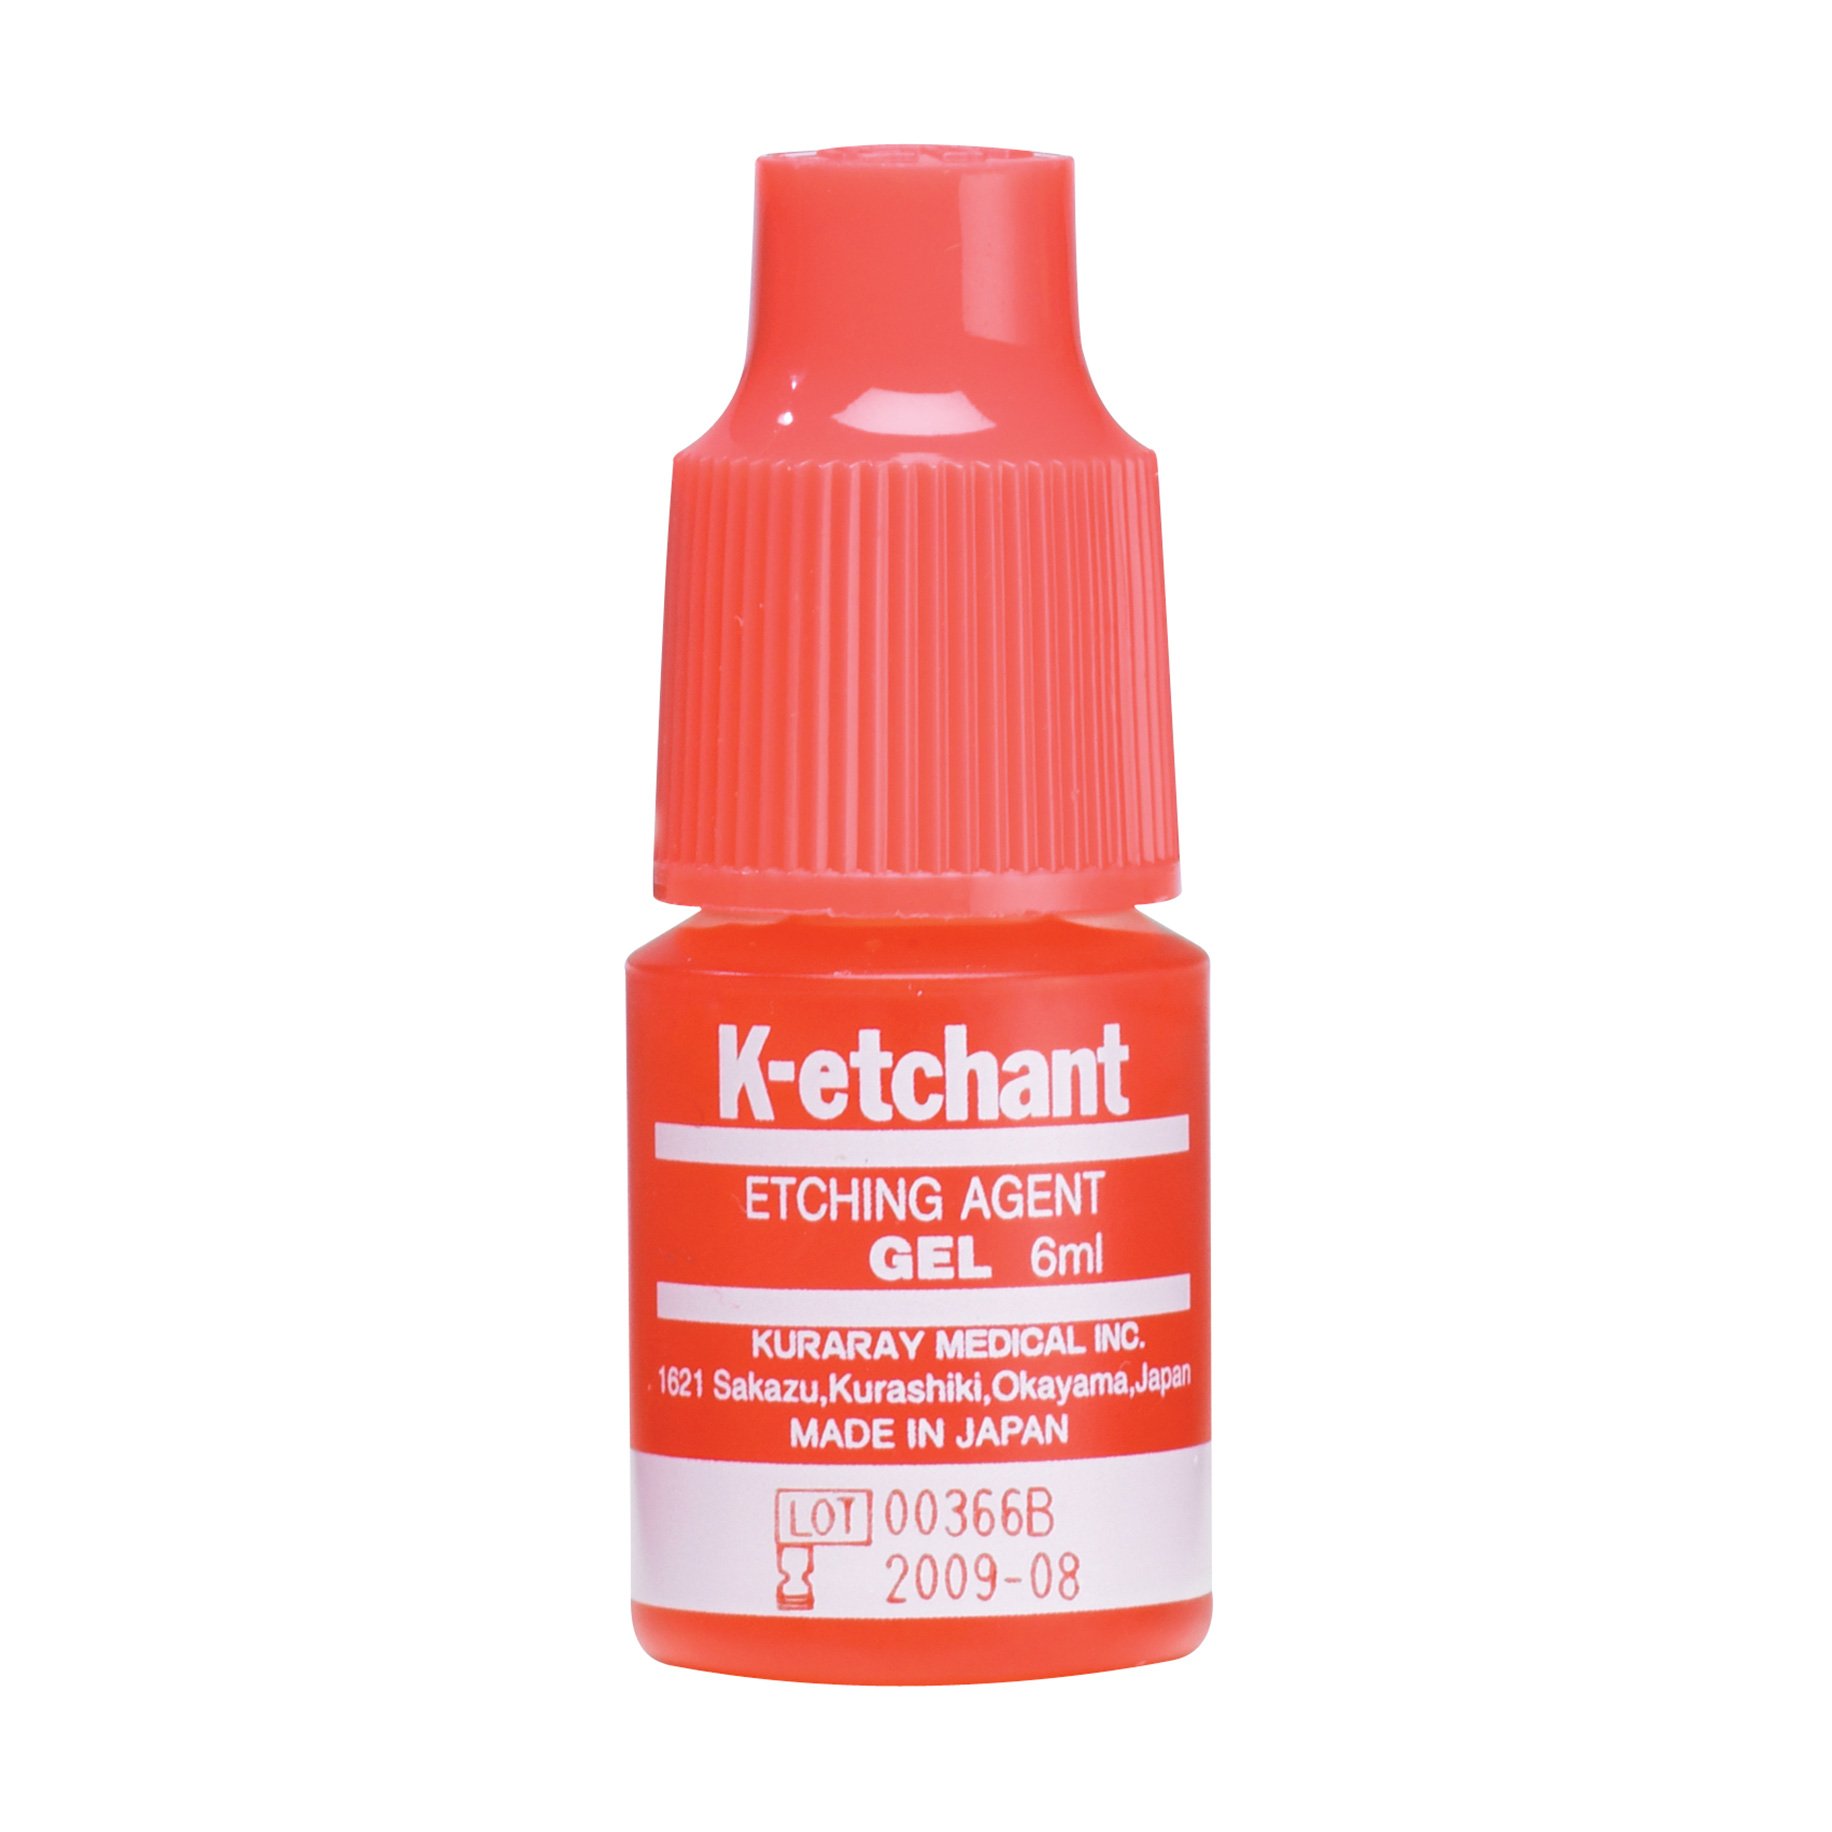 Clearfil K-Etchant Gel Bottle 